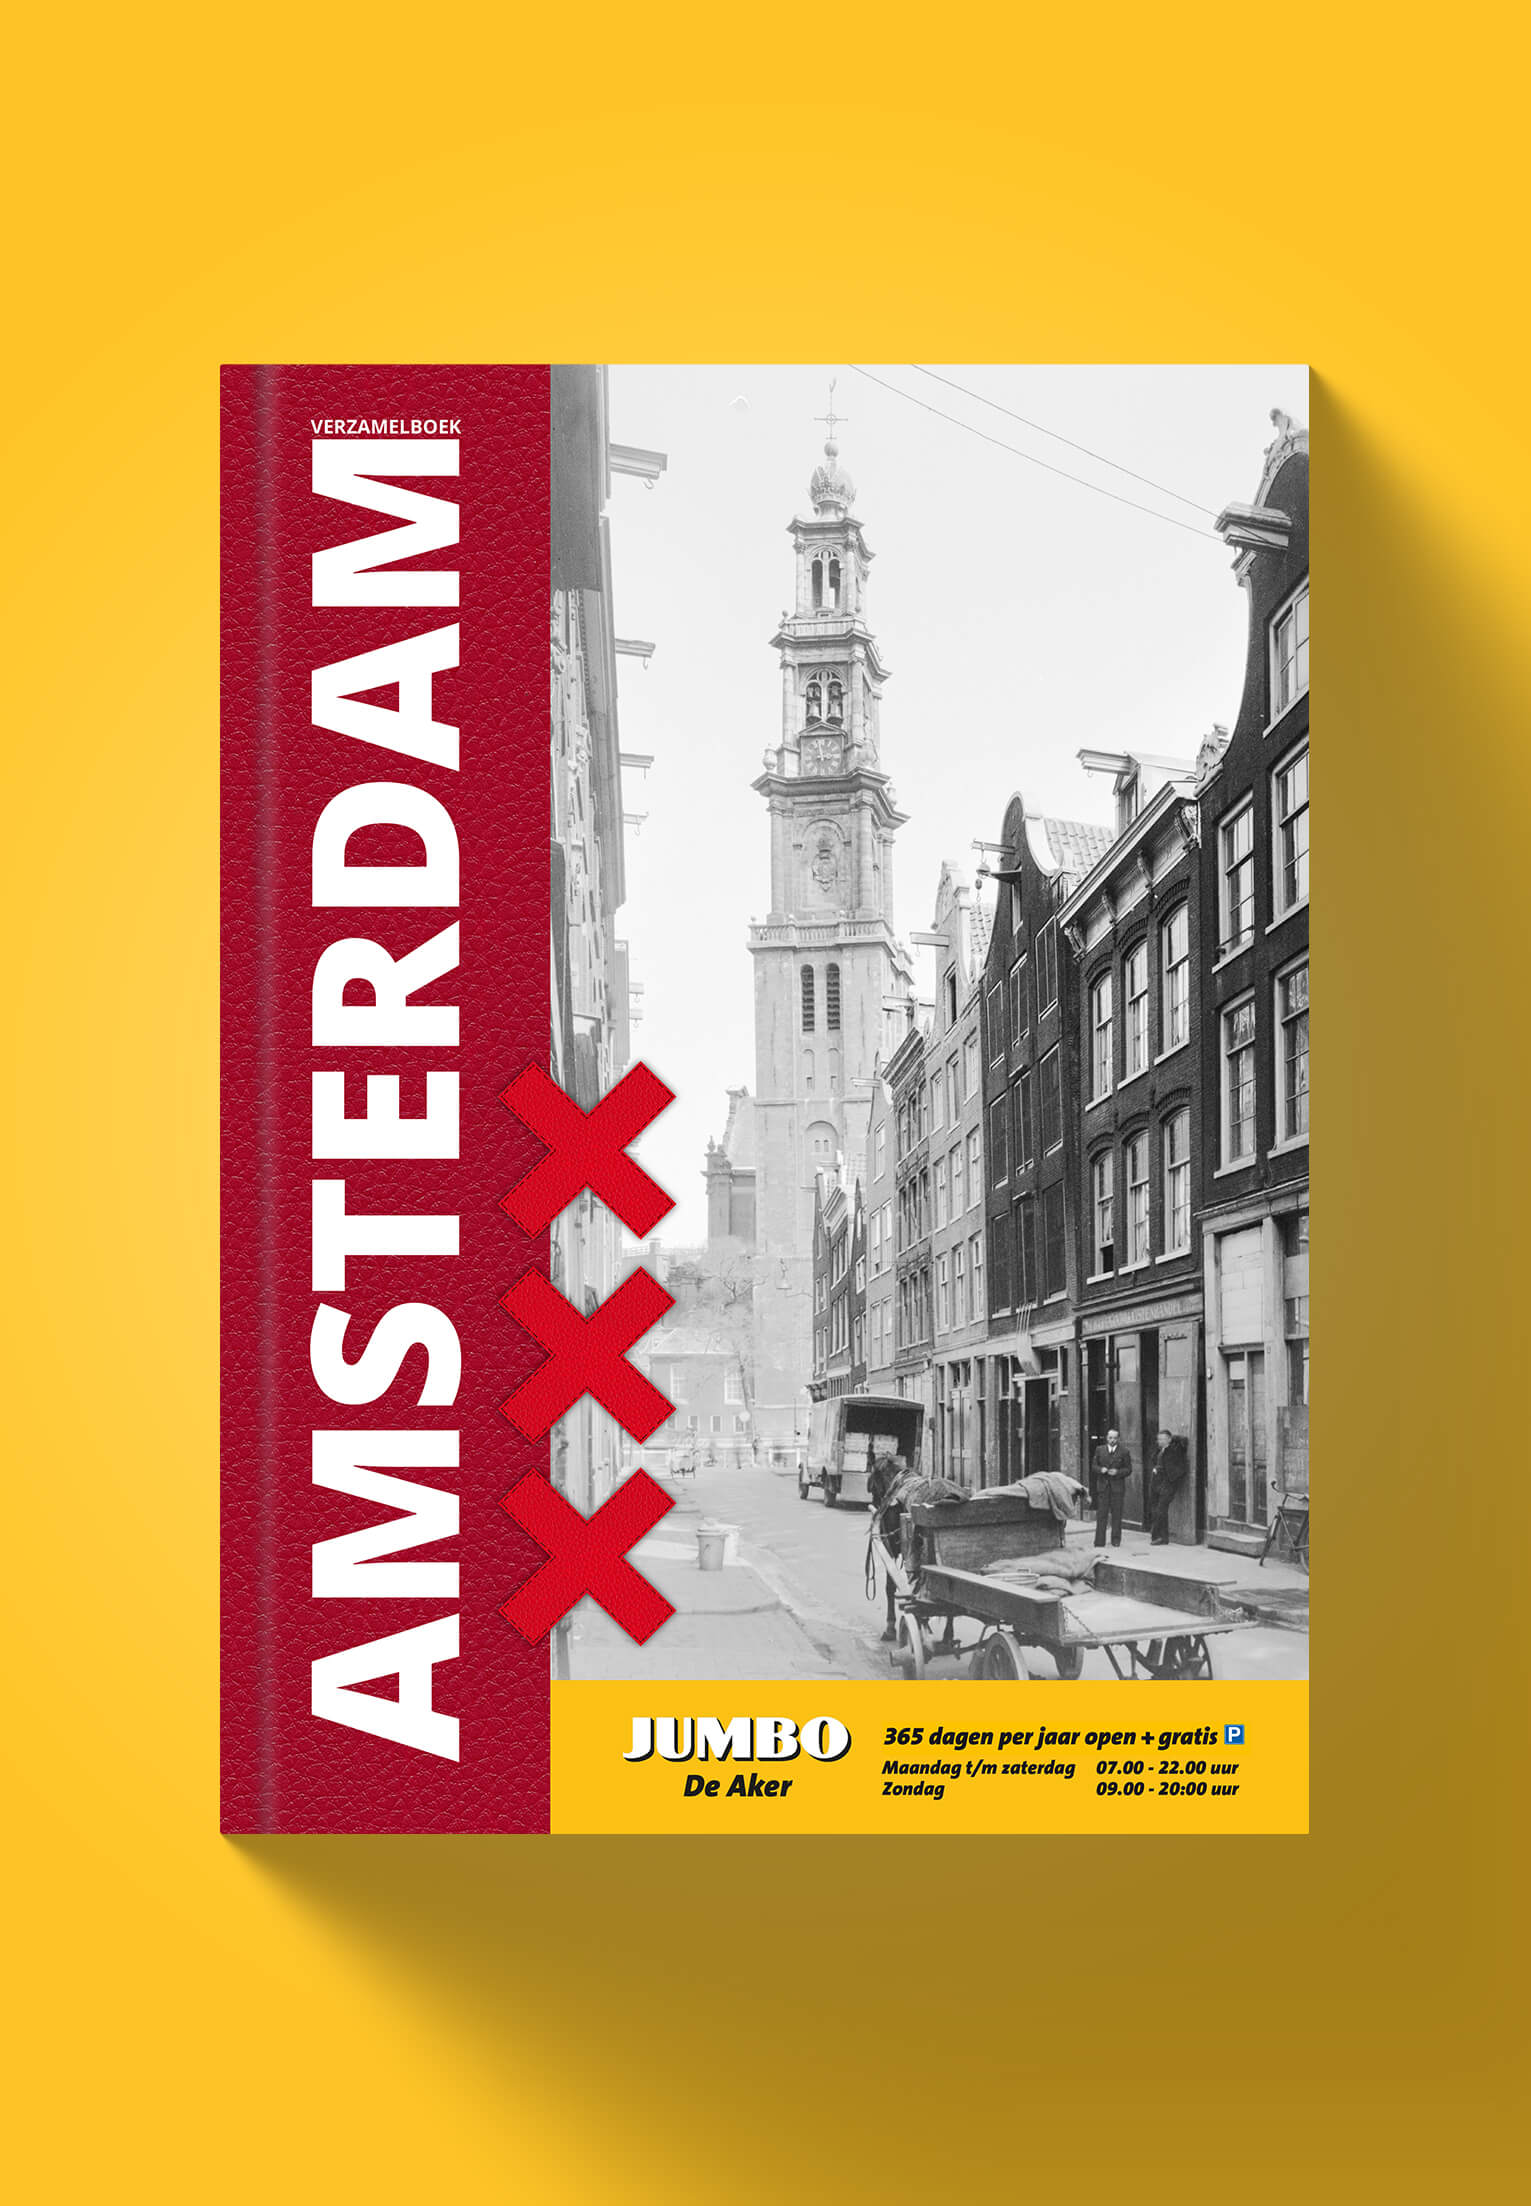 Amsterdam Verzamelboek - Verzamelalbum vol geschiedenis - Jumbo Supermarkt